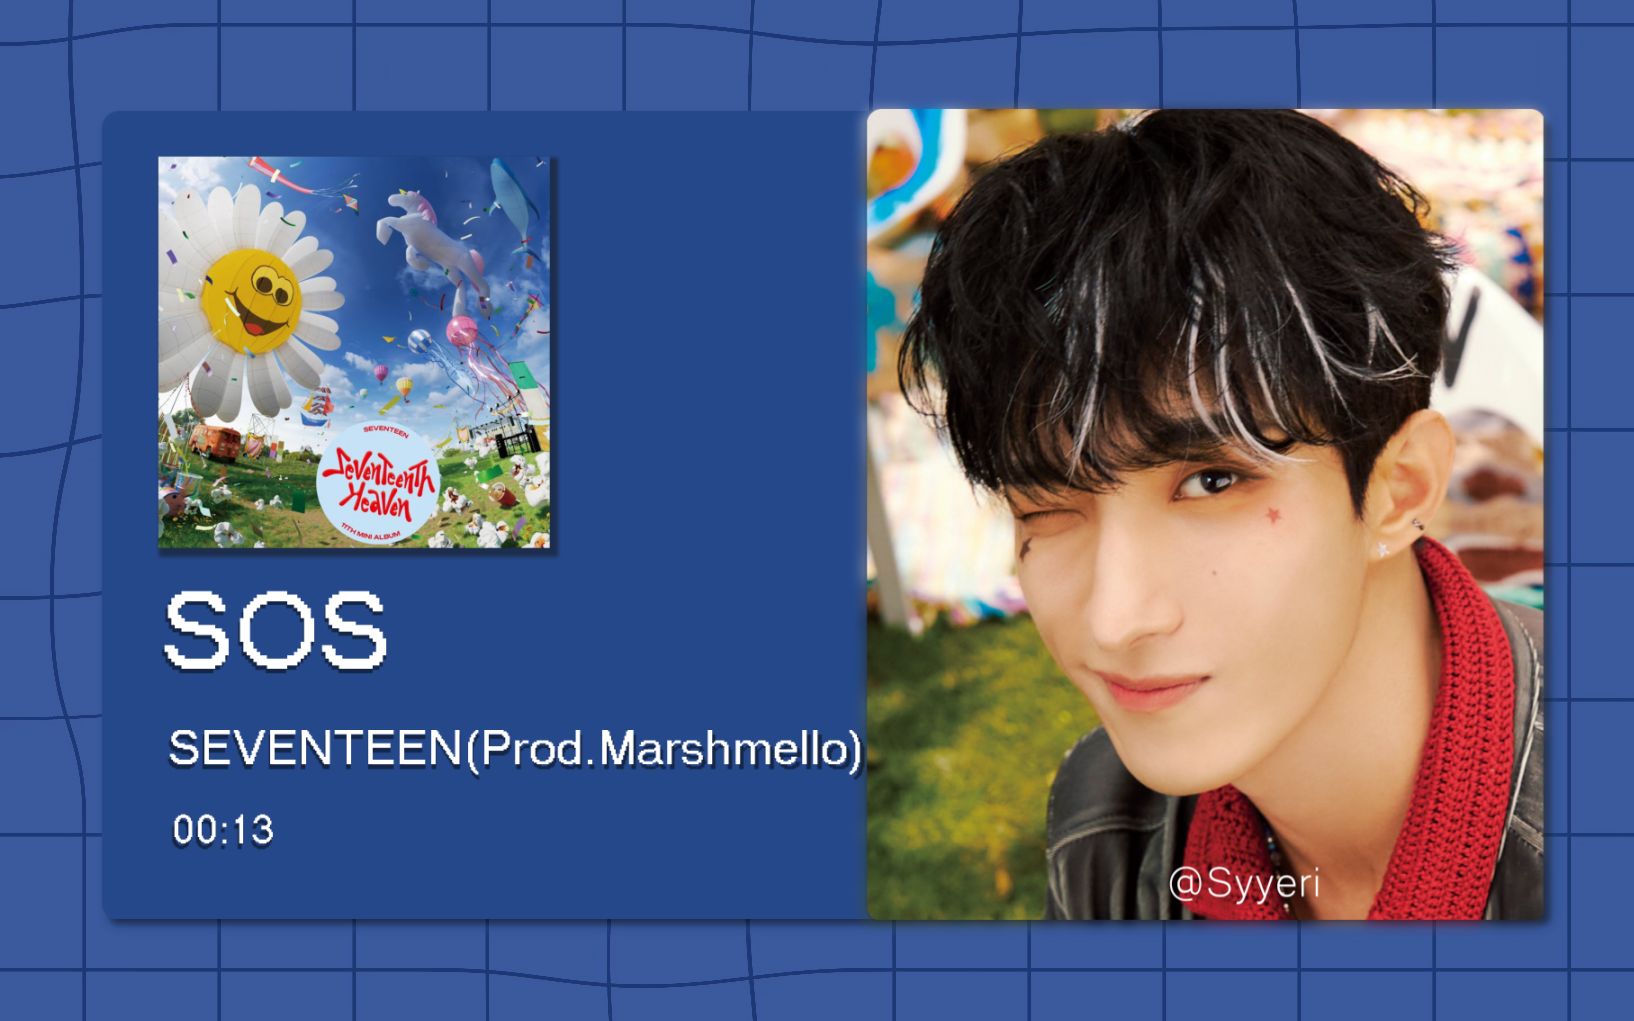 【8D环绕】SOS (Prod. Marshmello) - SEVENTEEN 请佩戴耳机使用~